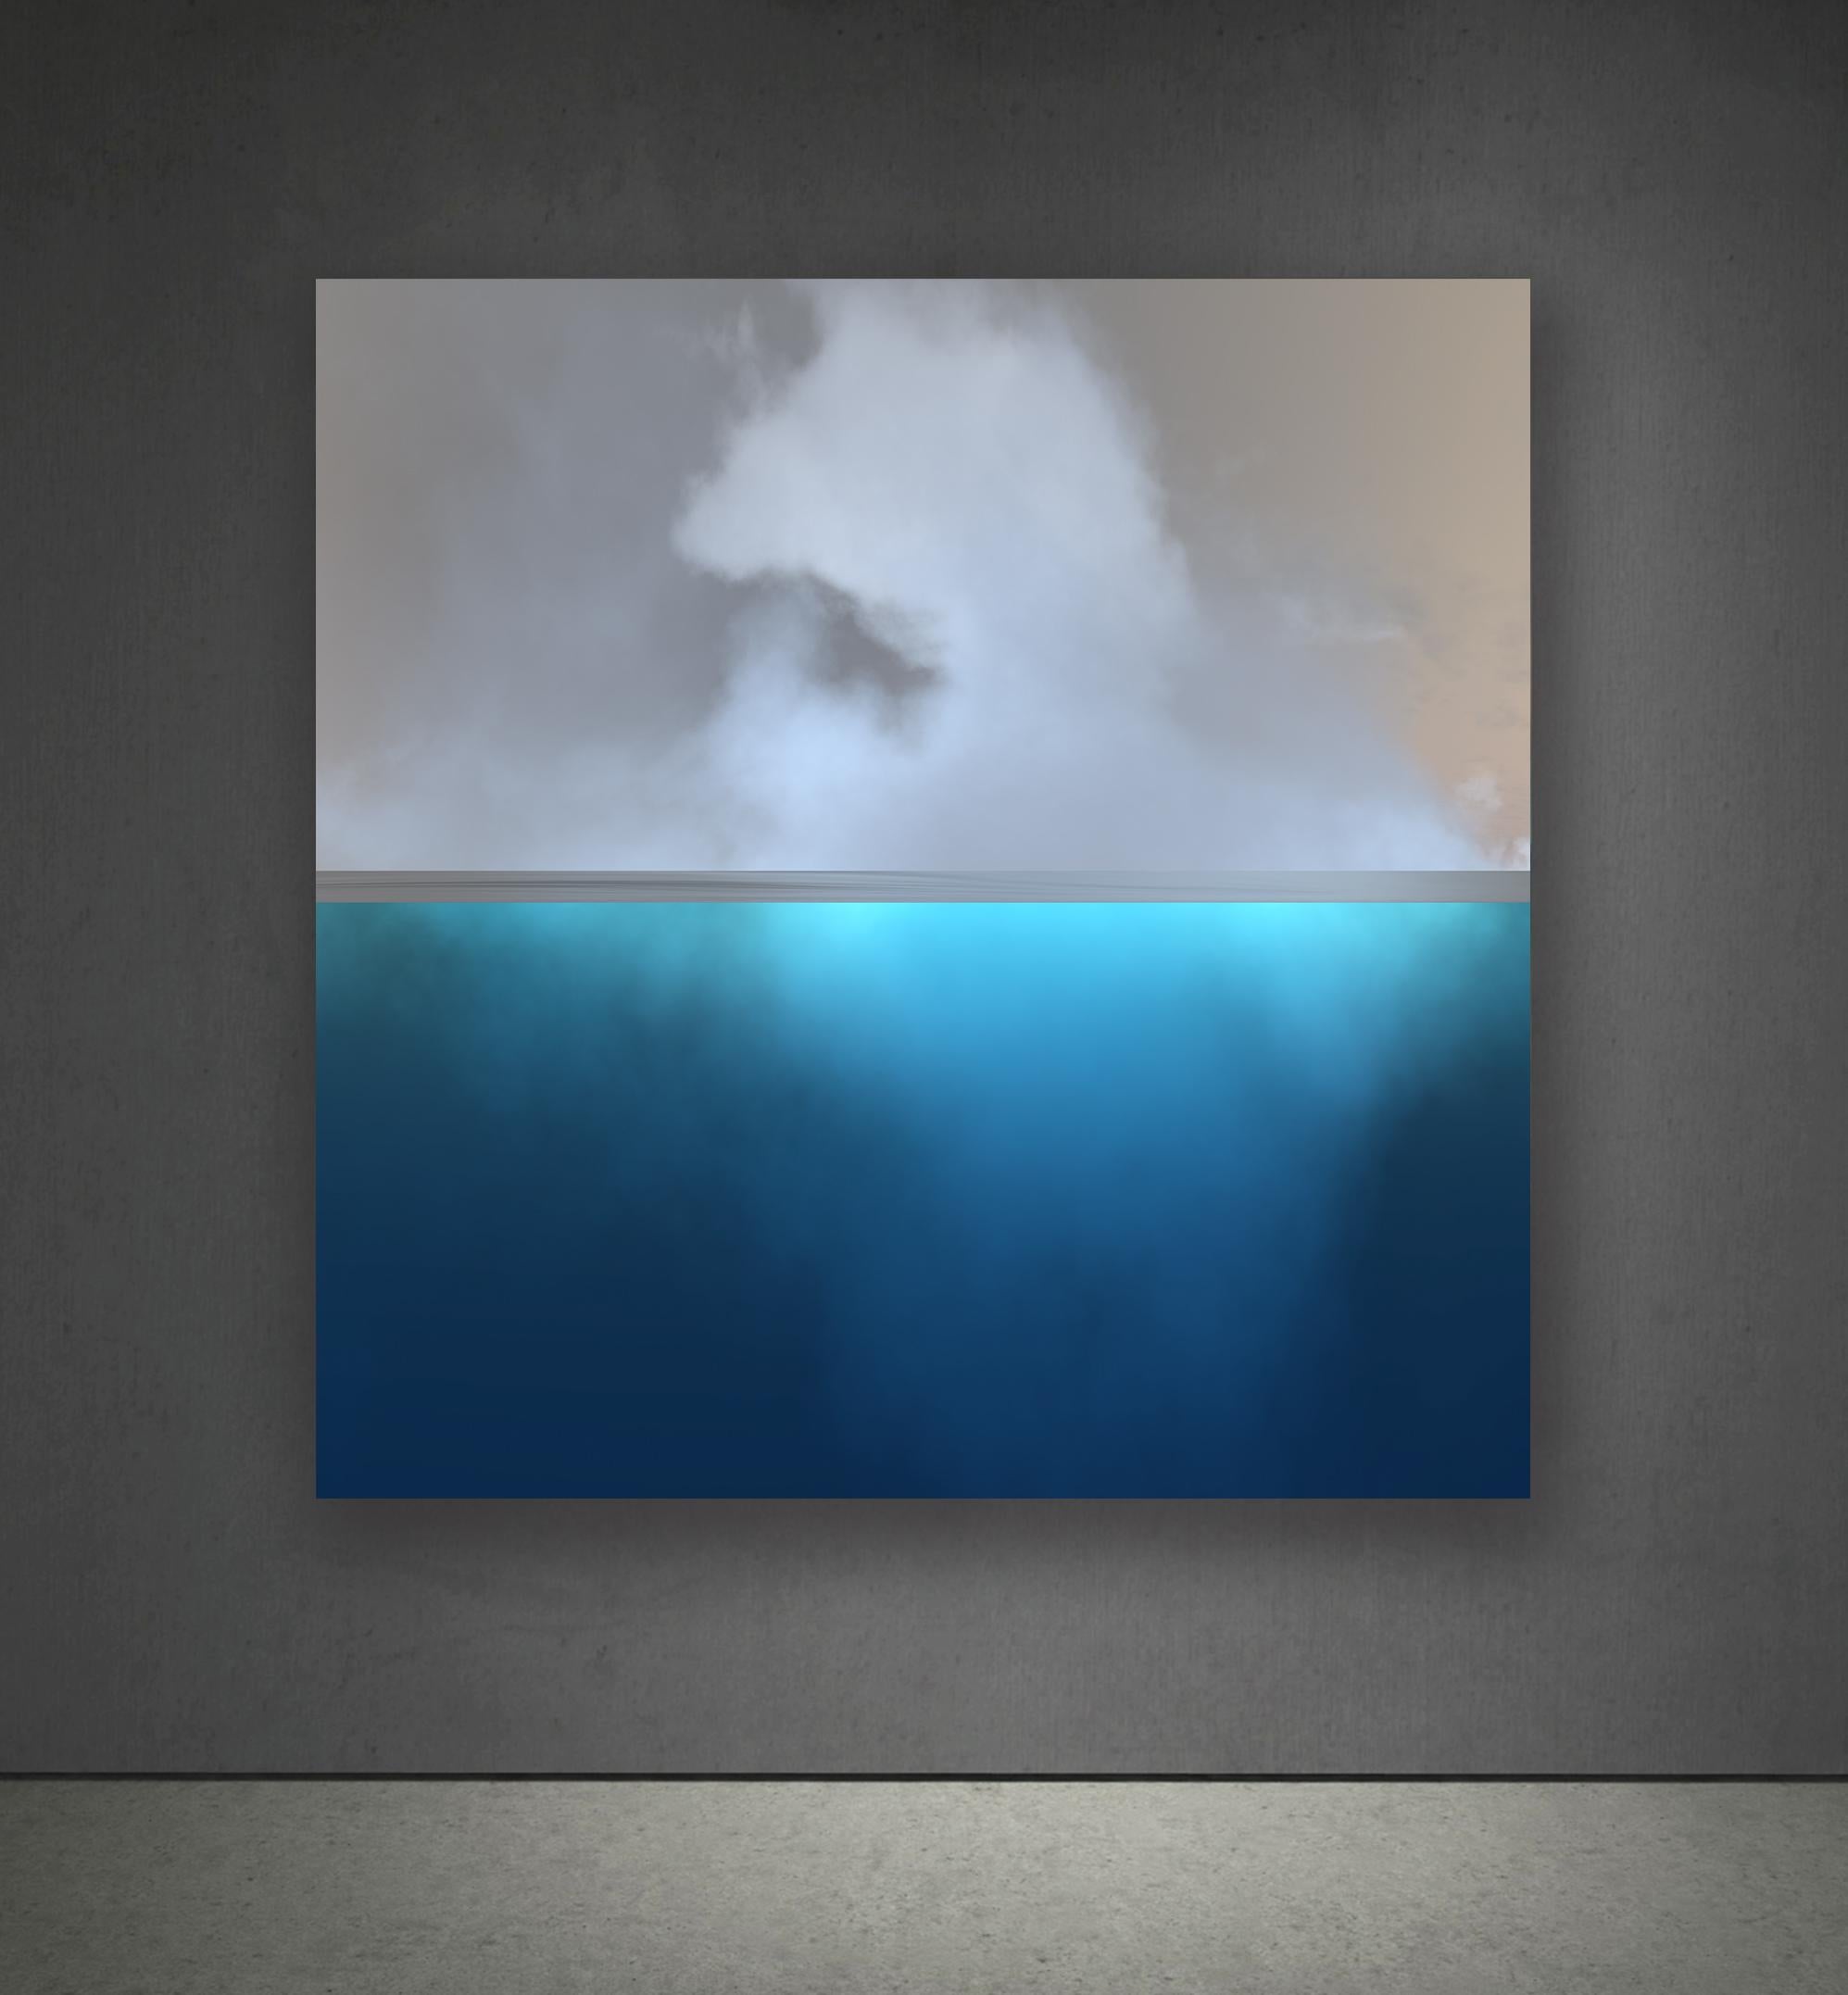 Clouds 5 - Contemporary Photograph by Paul-Émile Rioux